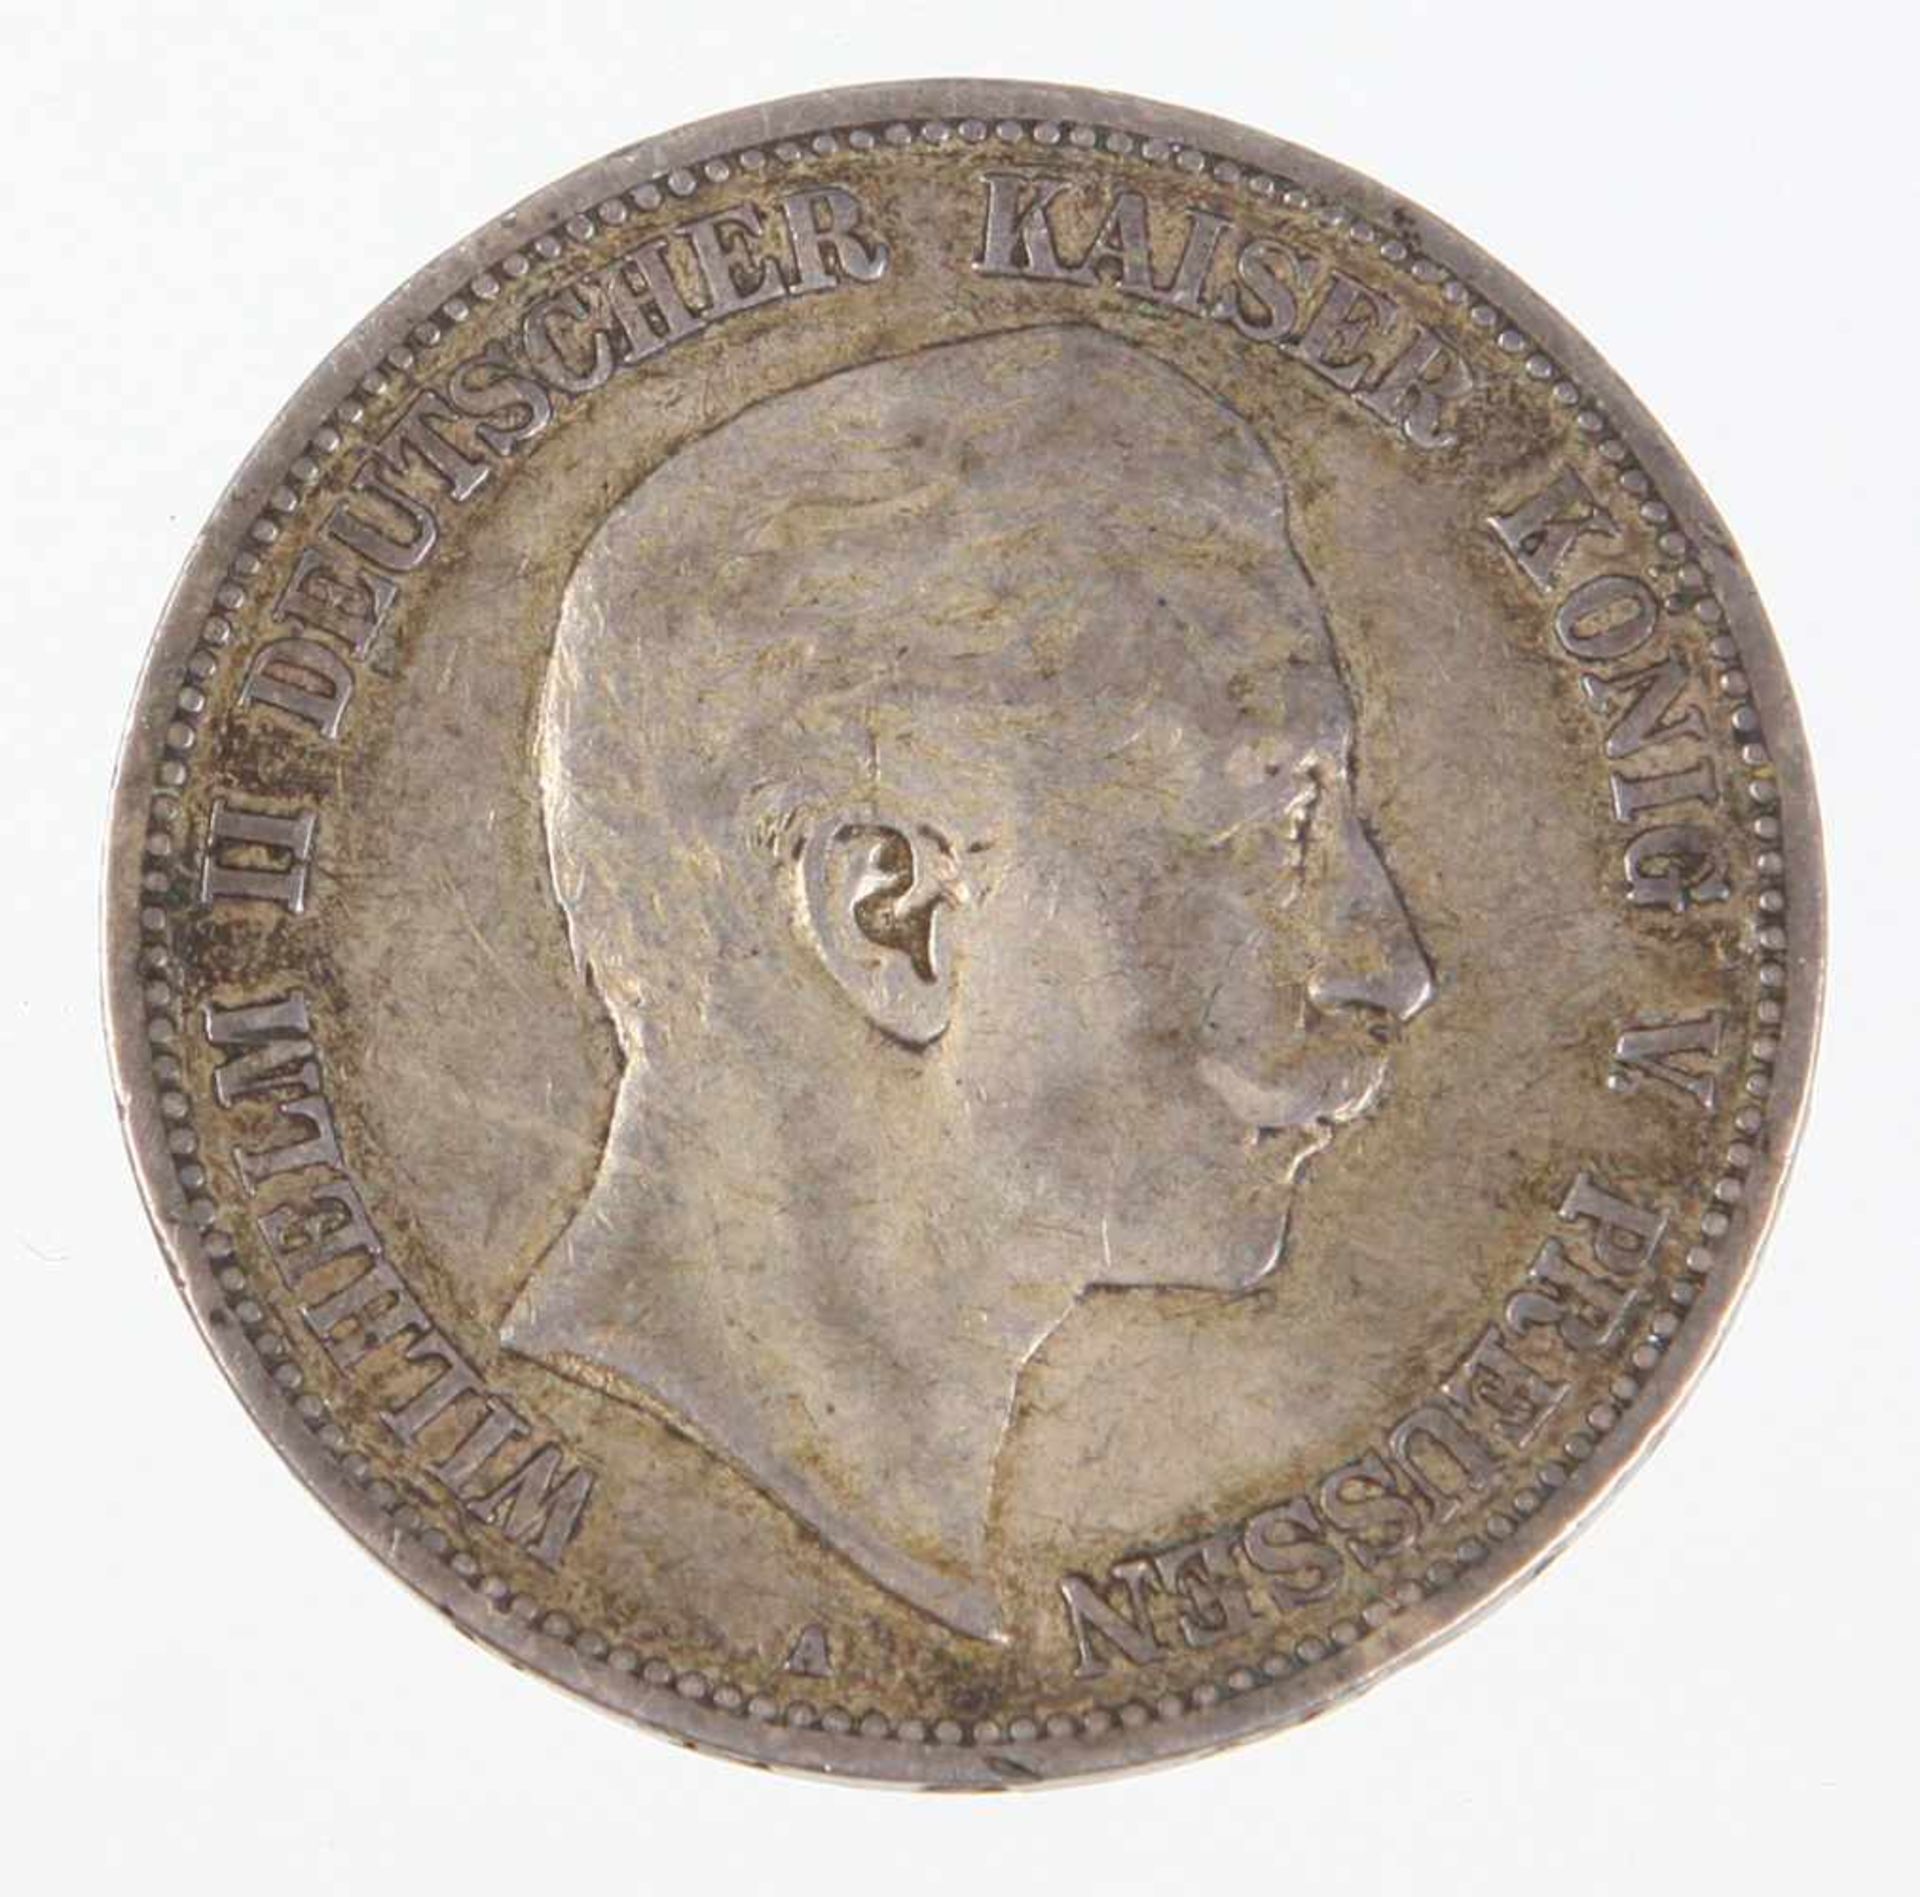 5 Mark Wilhelm II Preussen 1904 ASilbermünze Fünf Mark Deutsches Reich 1904, so um gekrönten